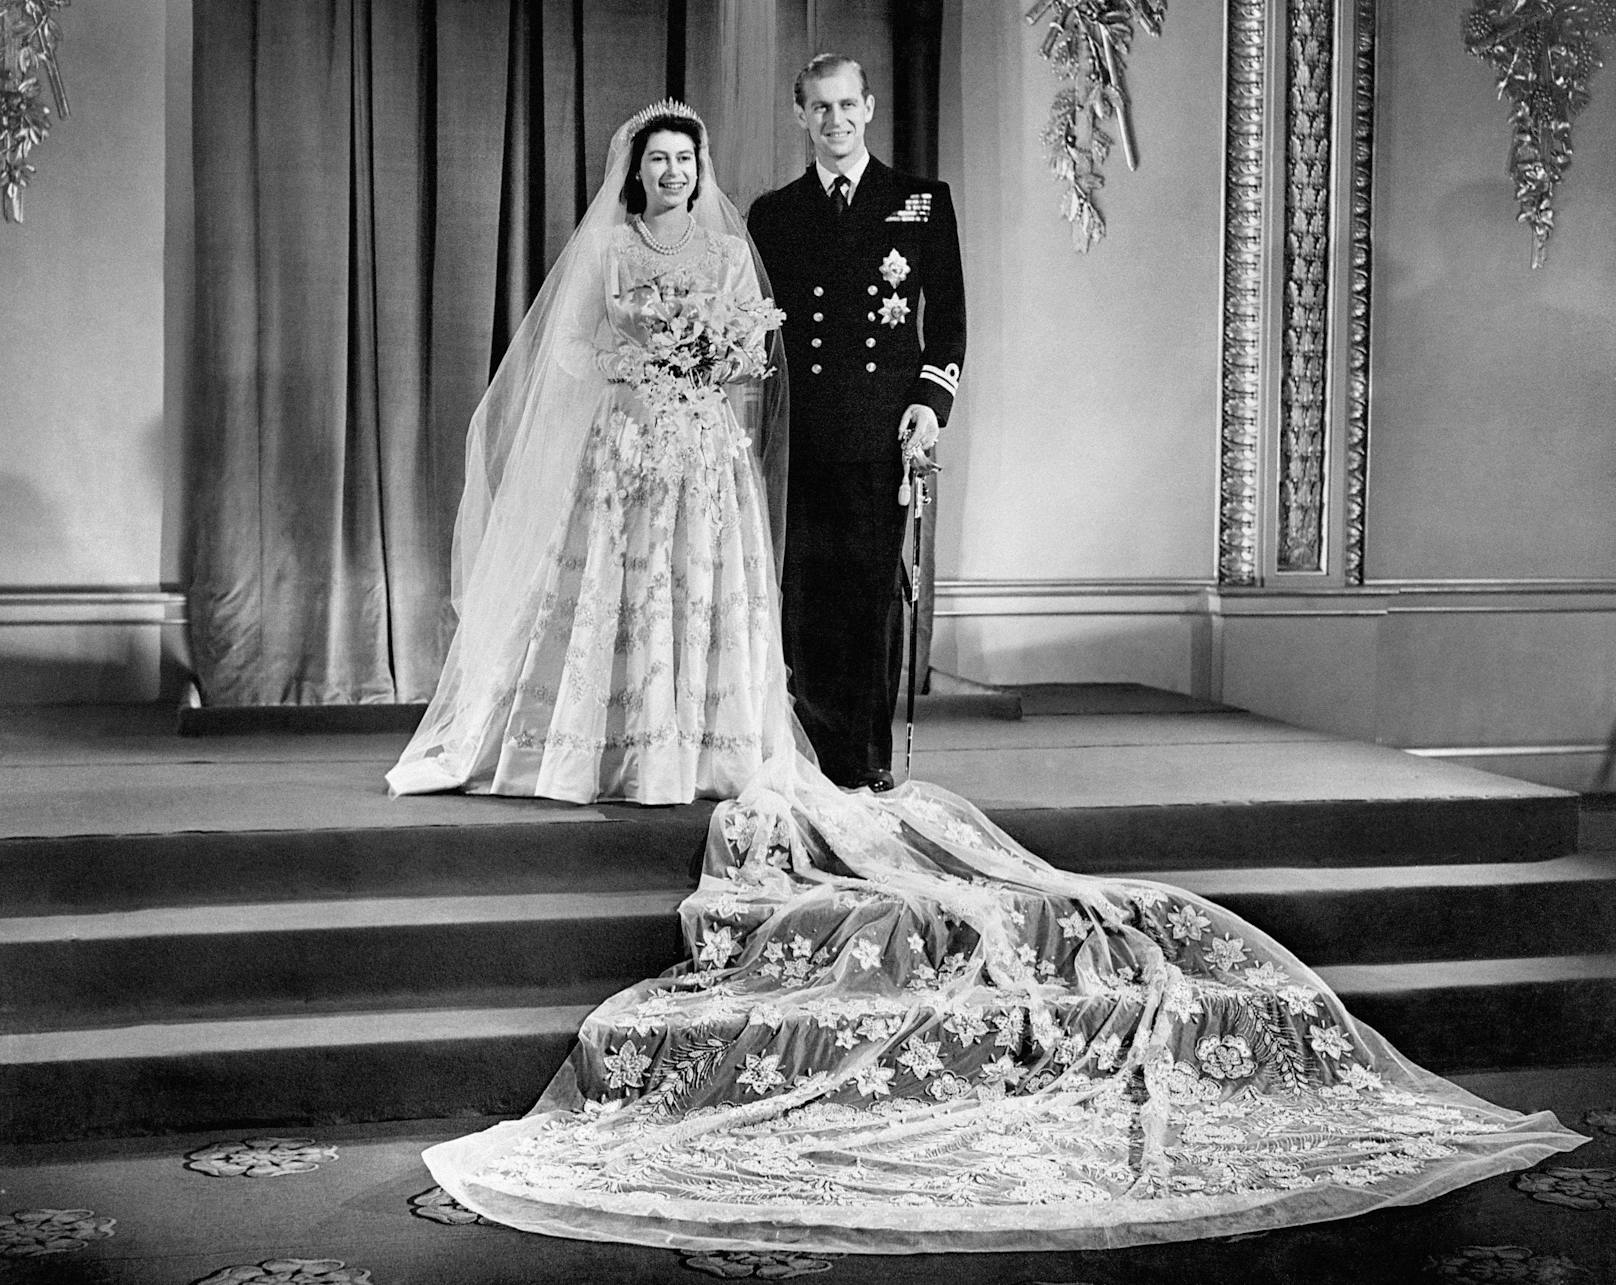 Ihr Hochzeitskleid von einem der damals bekanntesten Designer,&nbsp;Norman Hartnell, wurde von 350 Frauen genäht und bestickt. Diese arbeiteten drei Monate daran.